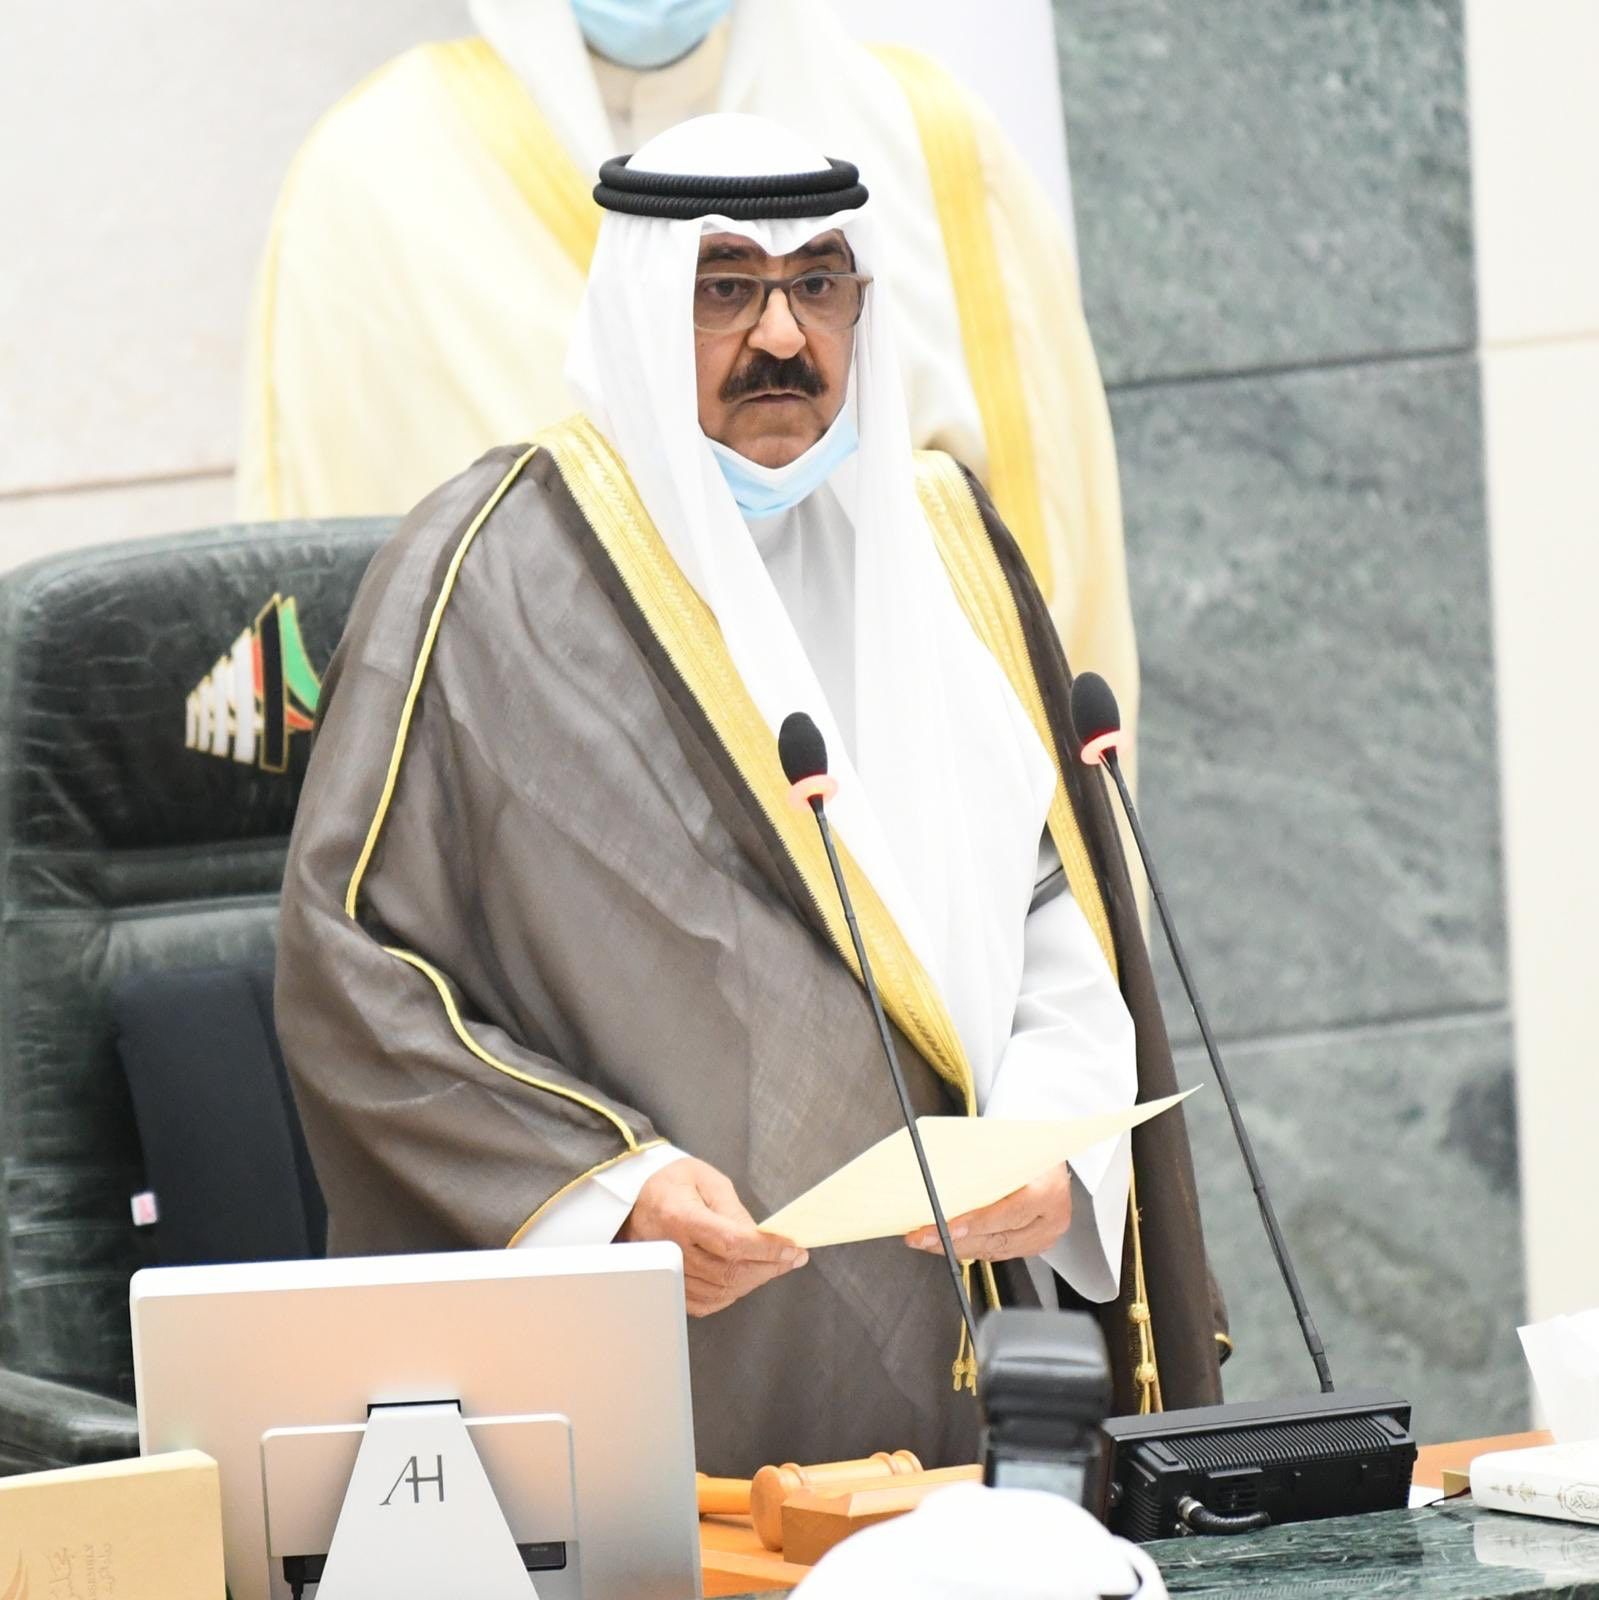 ولي العهد الكويتي في البرلمان خلال تأديته اليمين الدستورية - حساب مجلس الأمة على تويتر